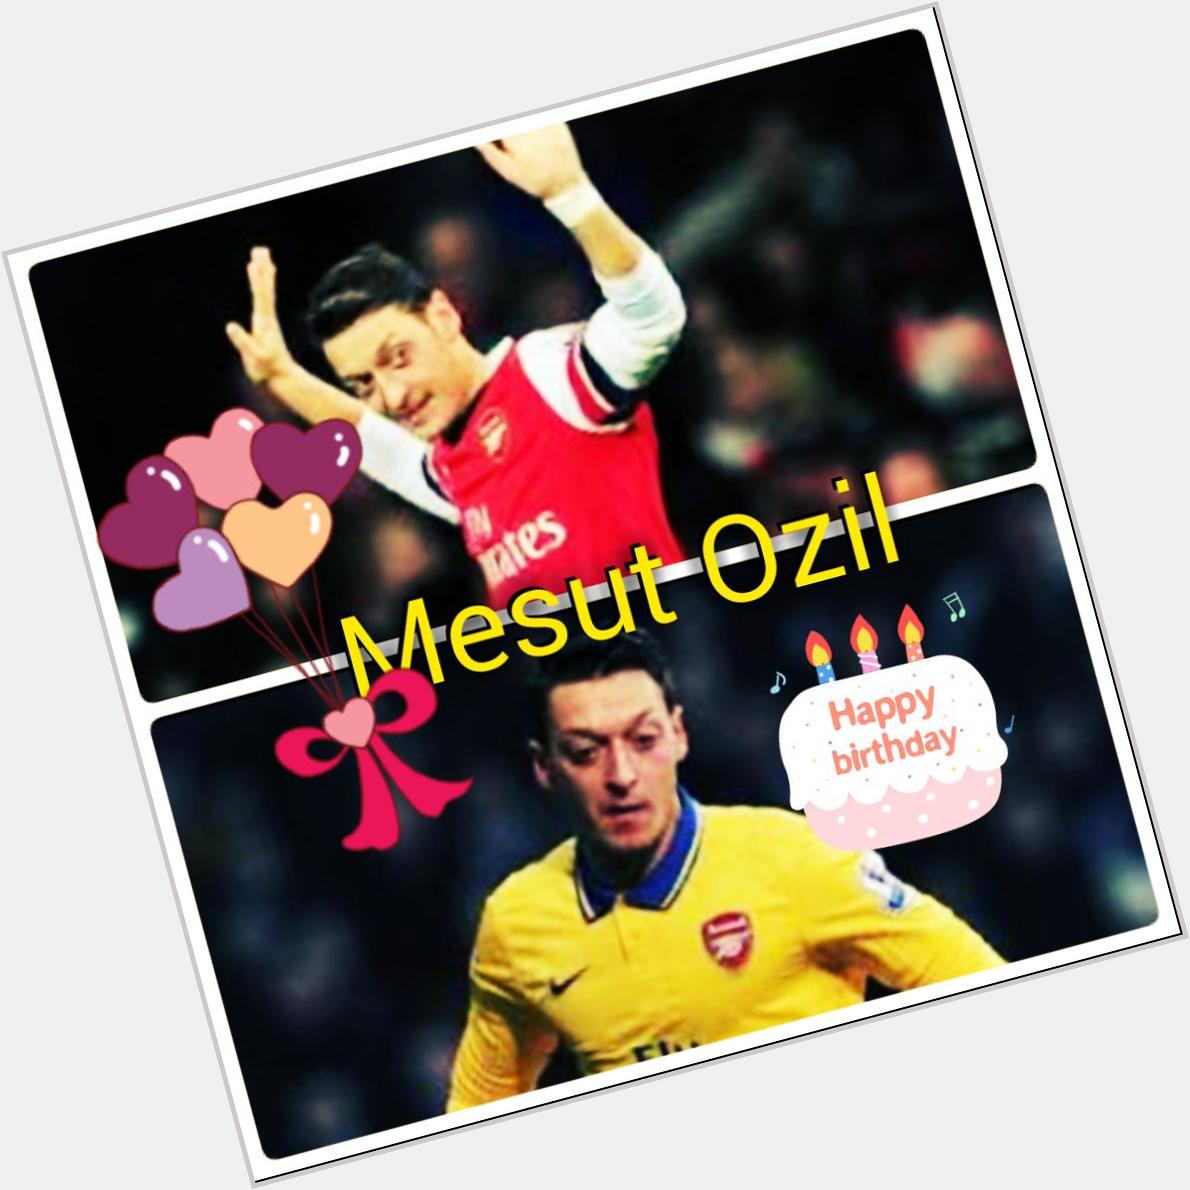 Happy birthday to Mesut Ozil    